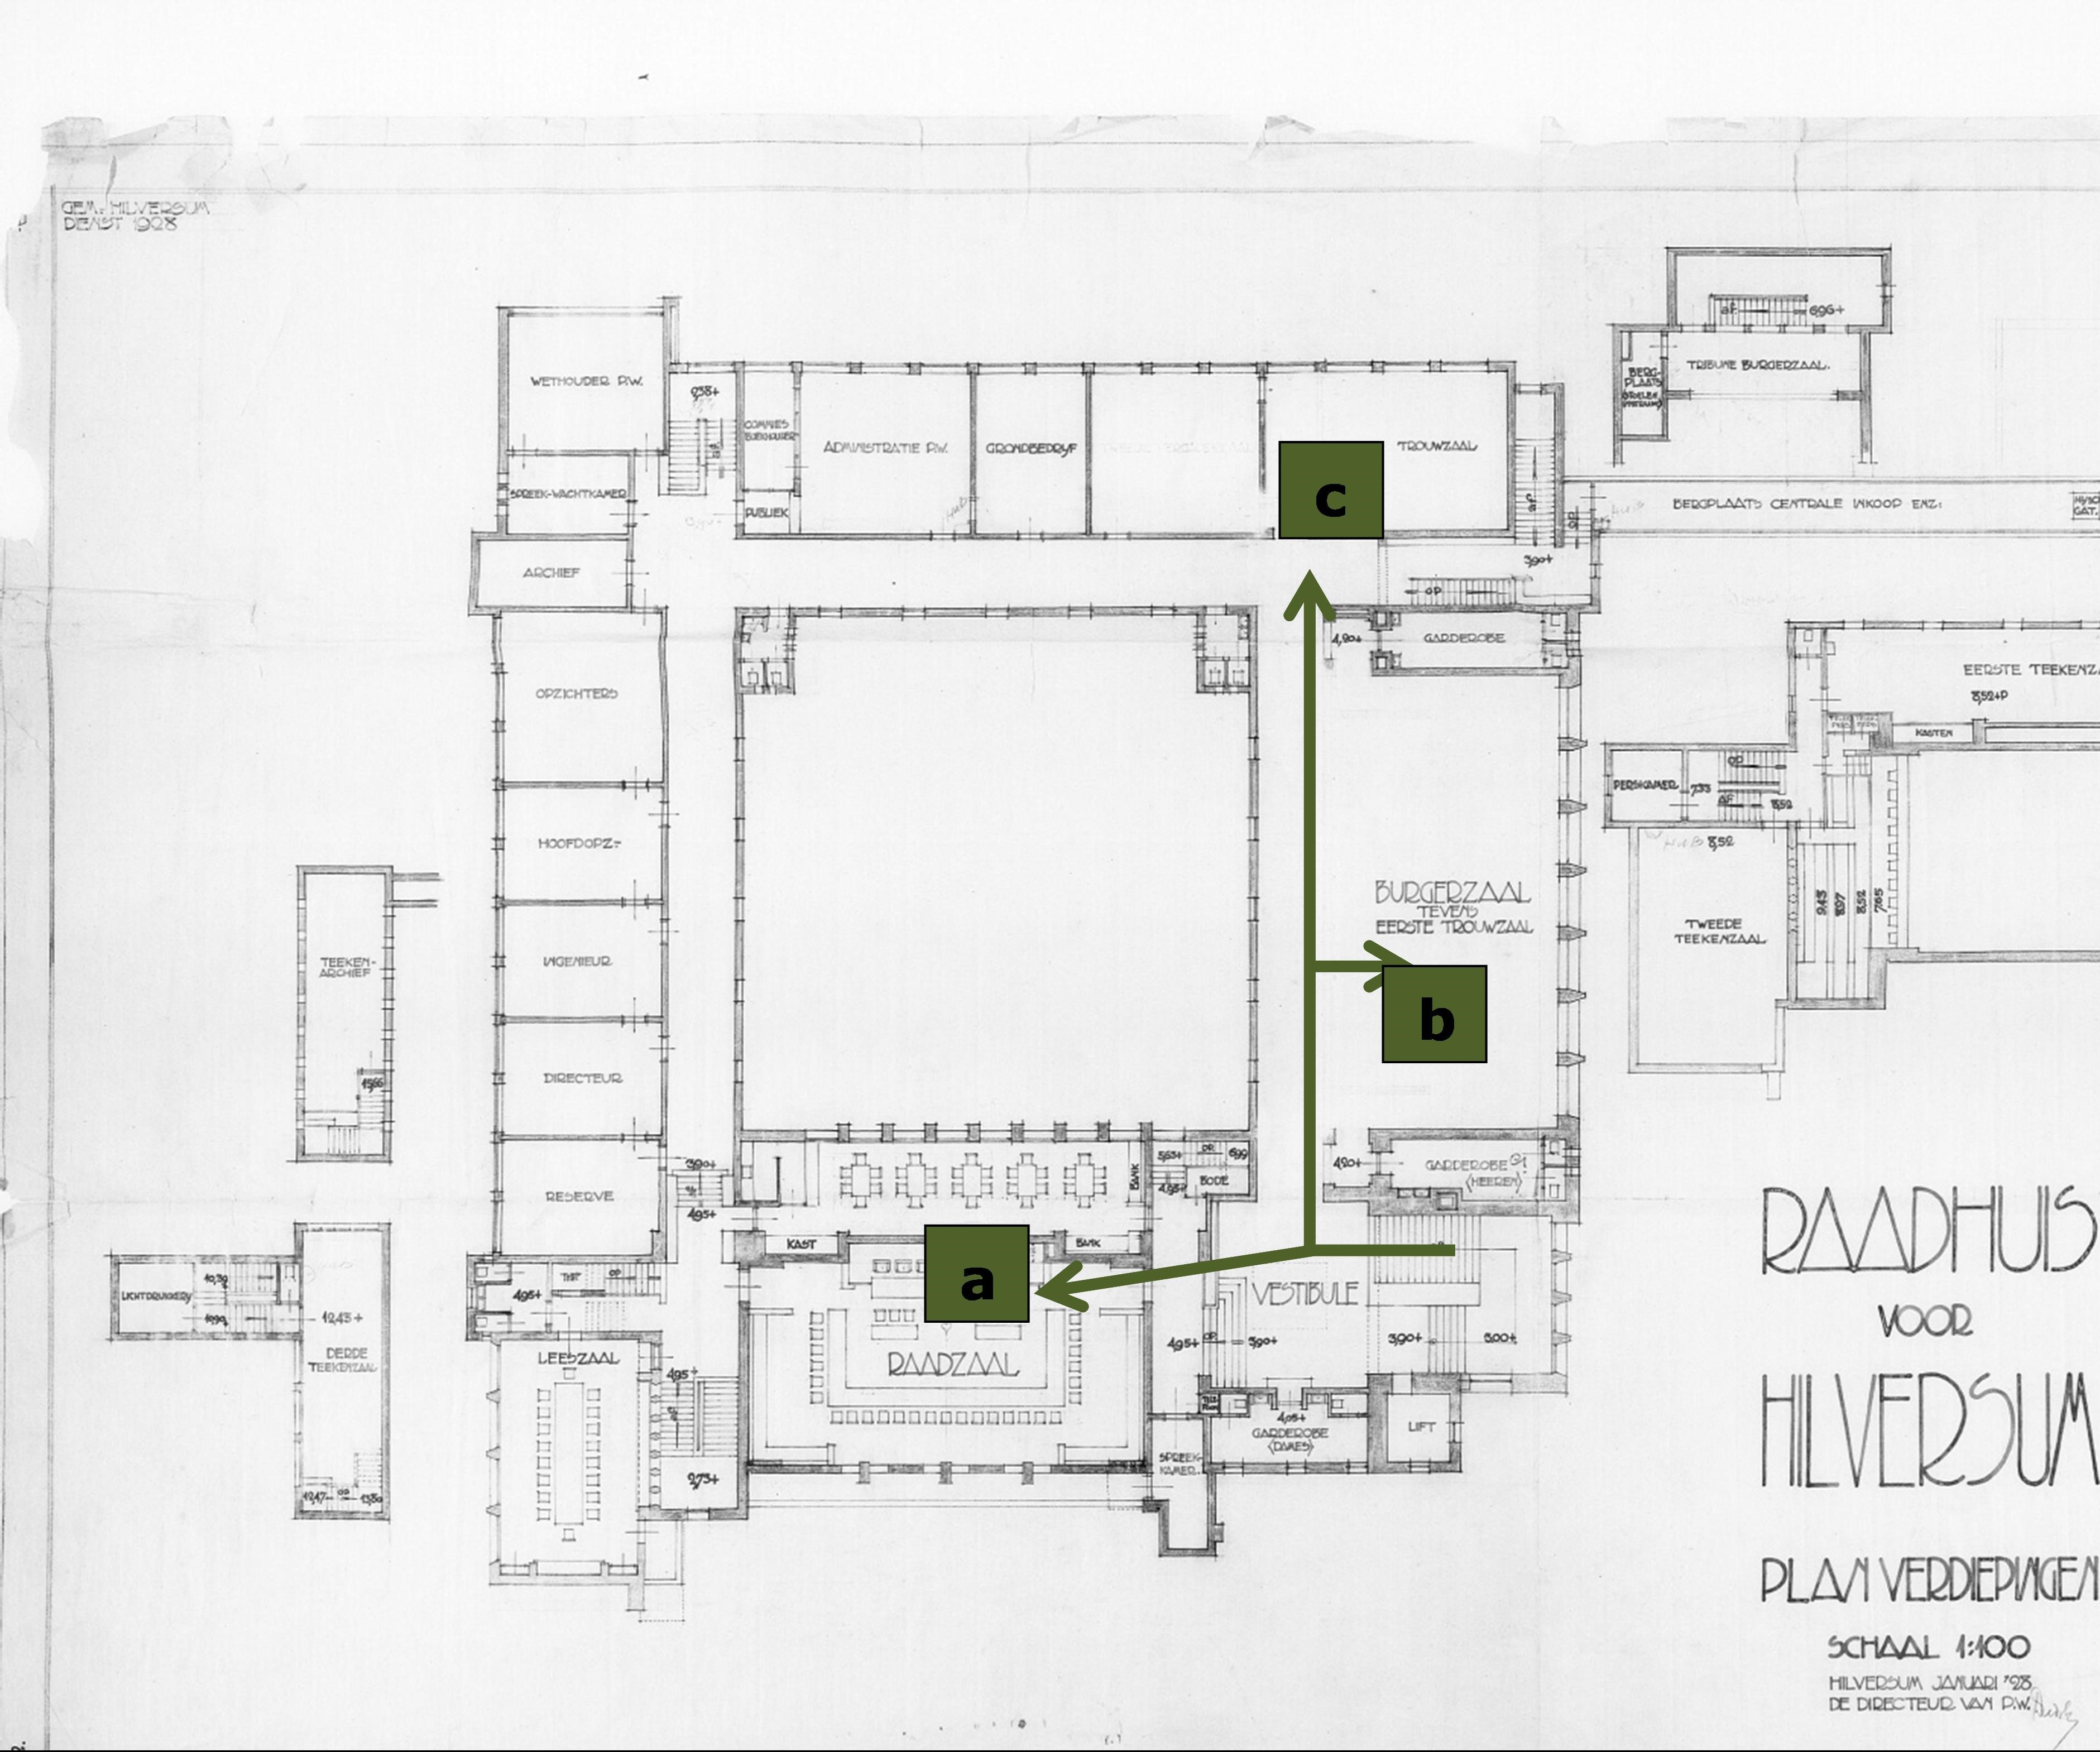 De plattegrond van de eerste verdieping van het hoofdgebouw met de raadzaal (zie a), de burgerzaal (zie b) en de trouwzaal (zie c), Streekarchief Gooi en Vechtstreek te Hilversum. Inventarisnummer SAGV169-2324.